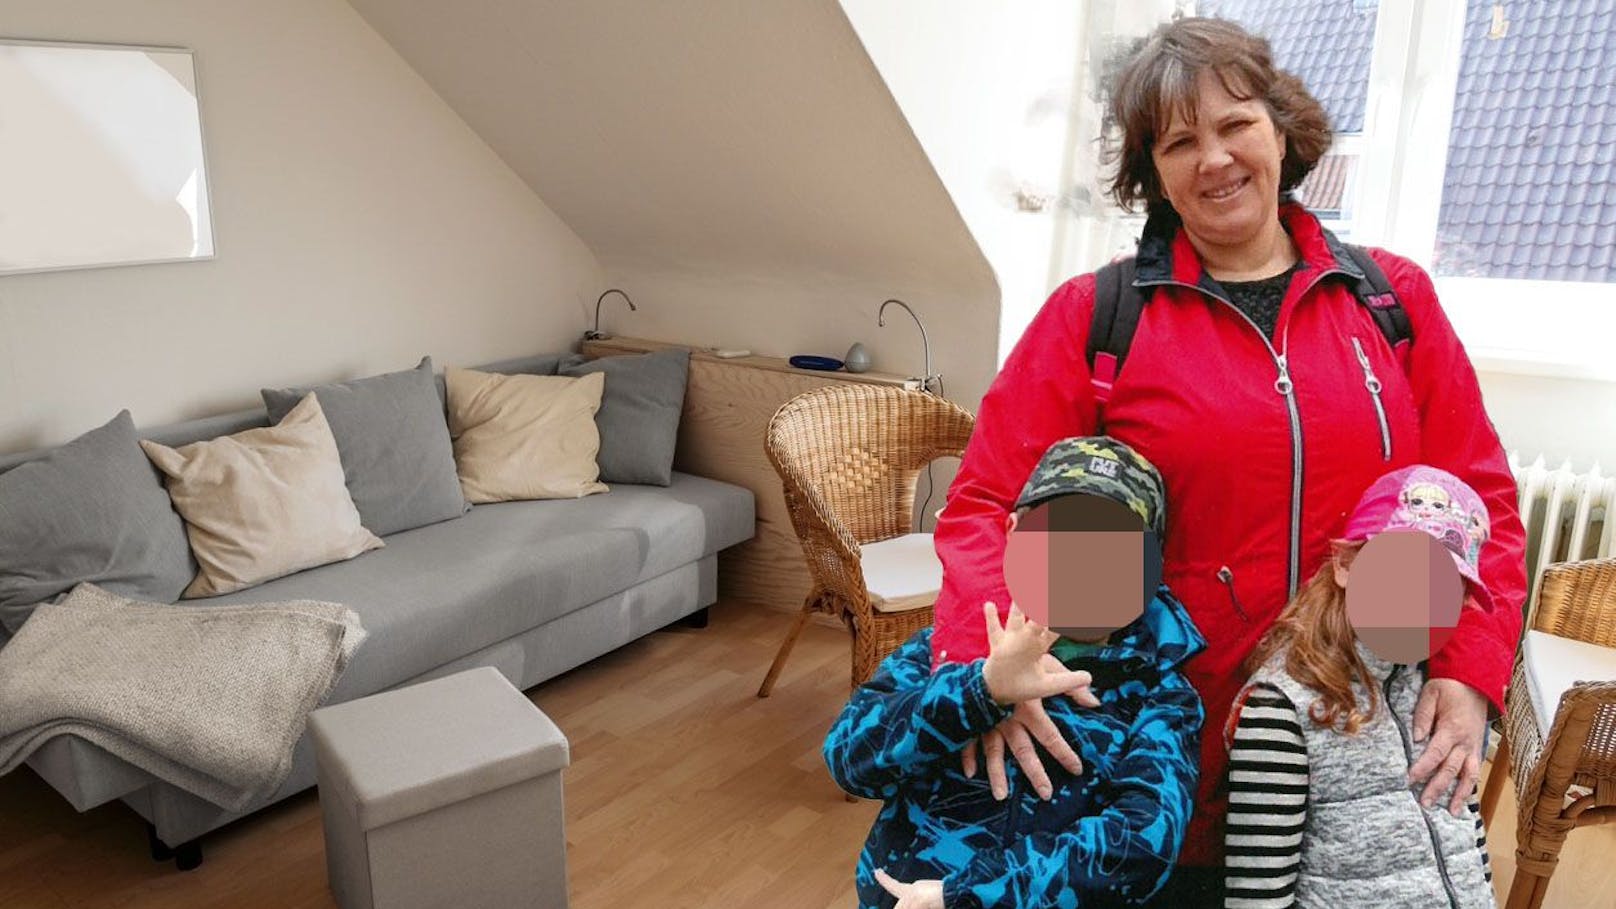 1 Zimmer, Klo im Keller: Mama aus Ukraine sucht Wohnung